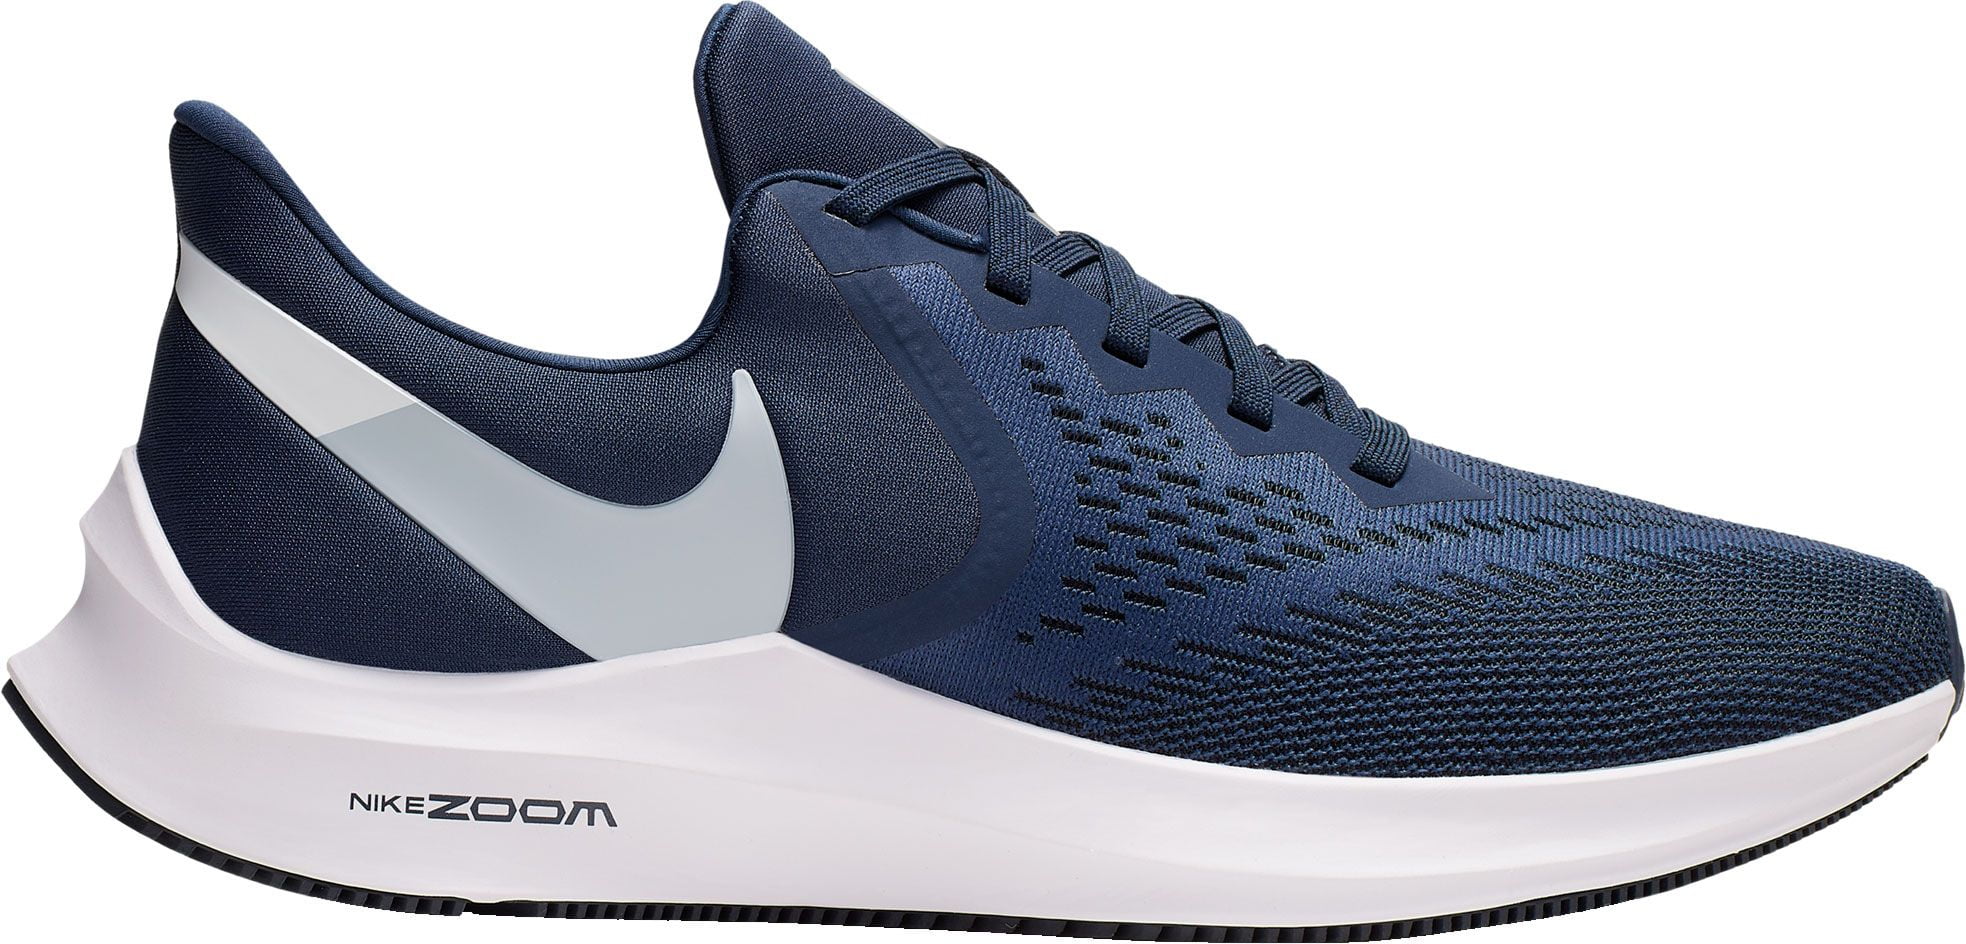 Nike - Nike Men's Zoom Winflo 6 Running Shoes - Walmart.com - Walmart.com